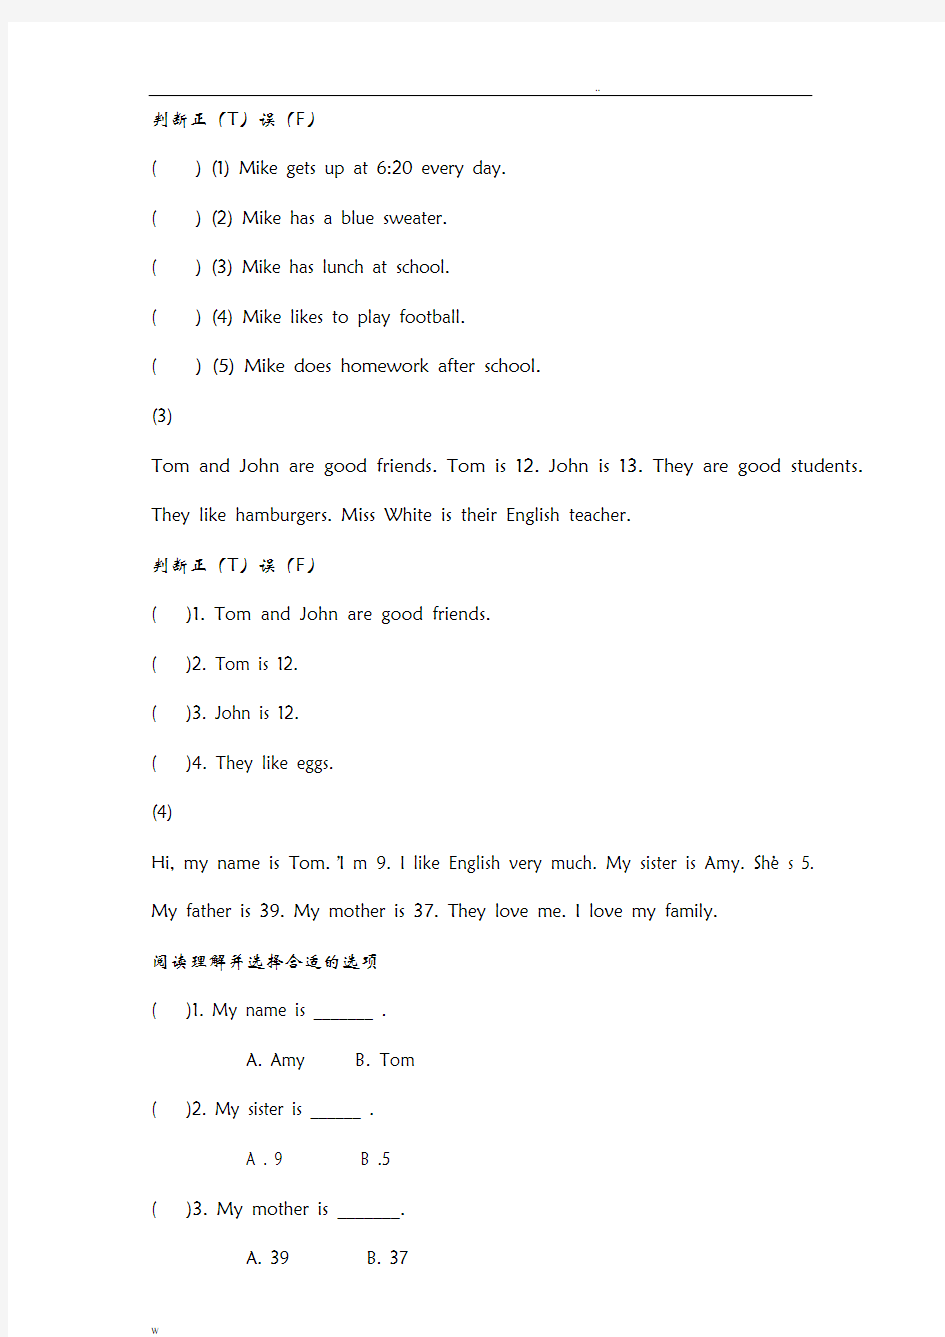 小学三年级英语阅读理解专项训练-40篇(含答案)